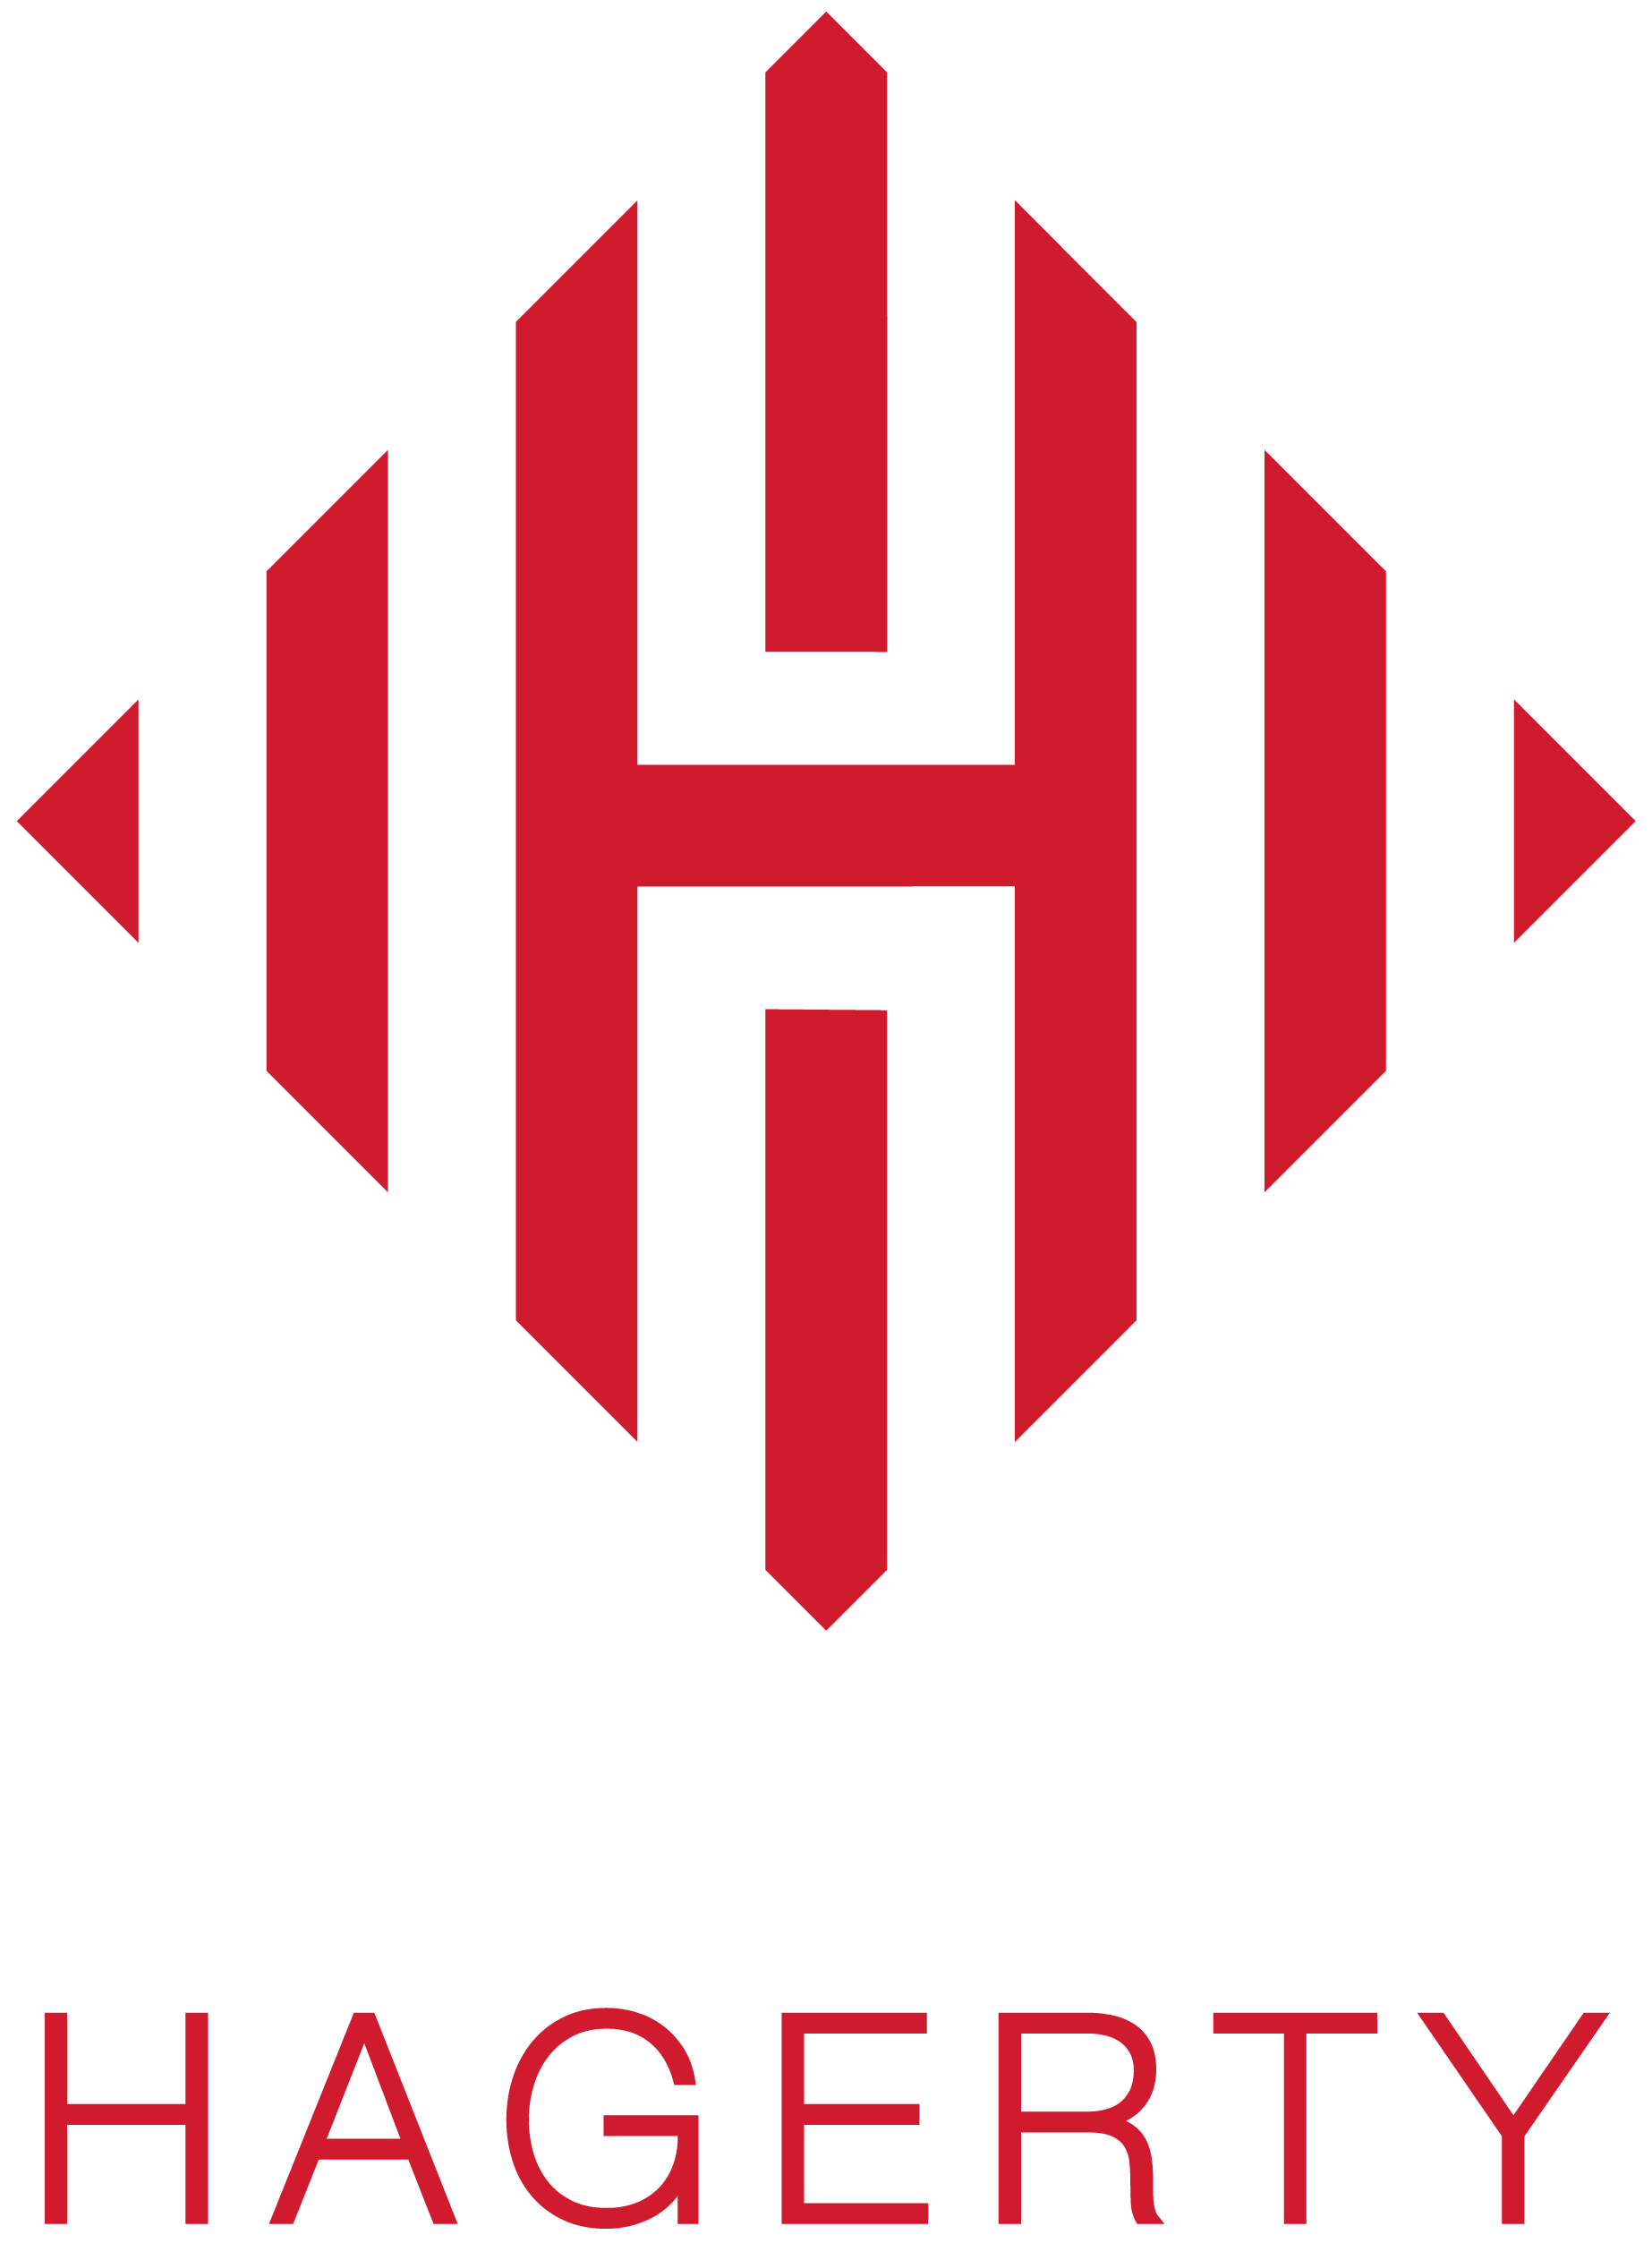 Hagerty Logo - hagerty logo - Hagerty Consulting